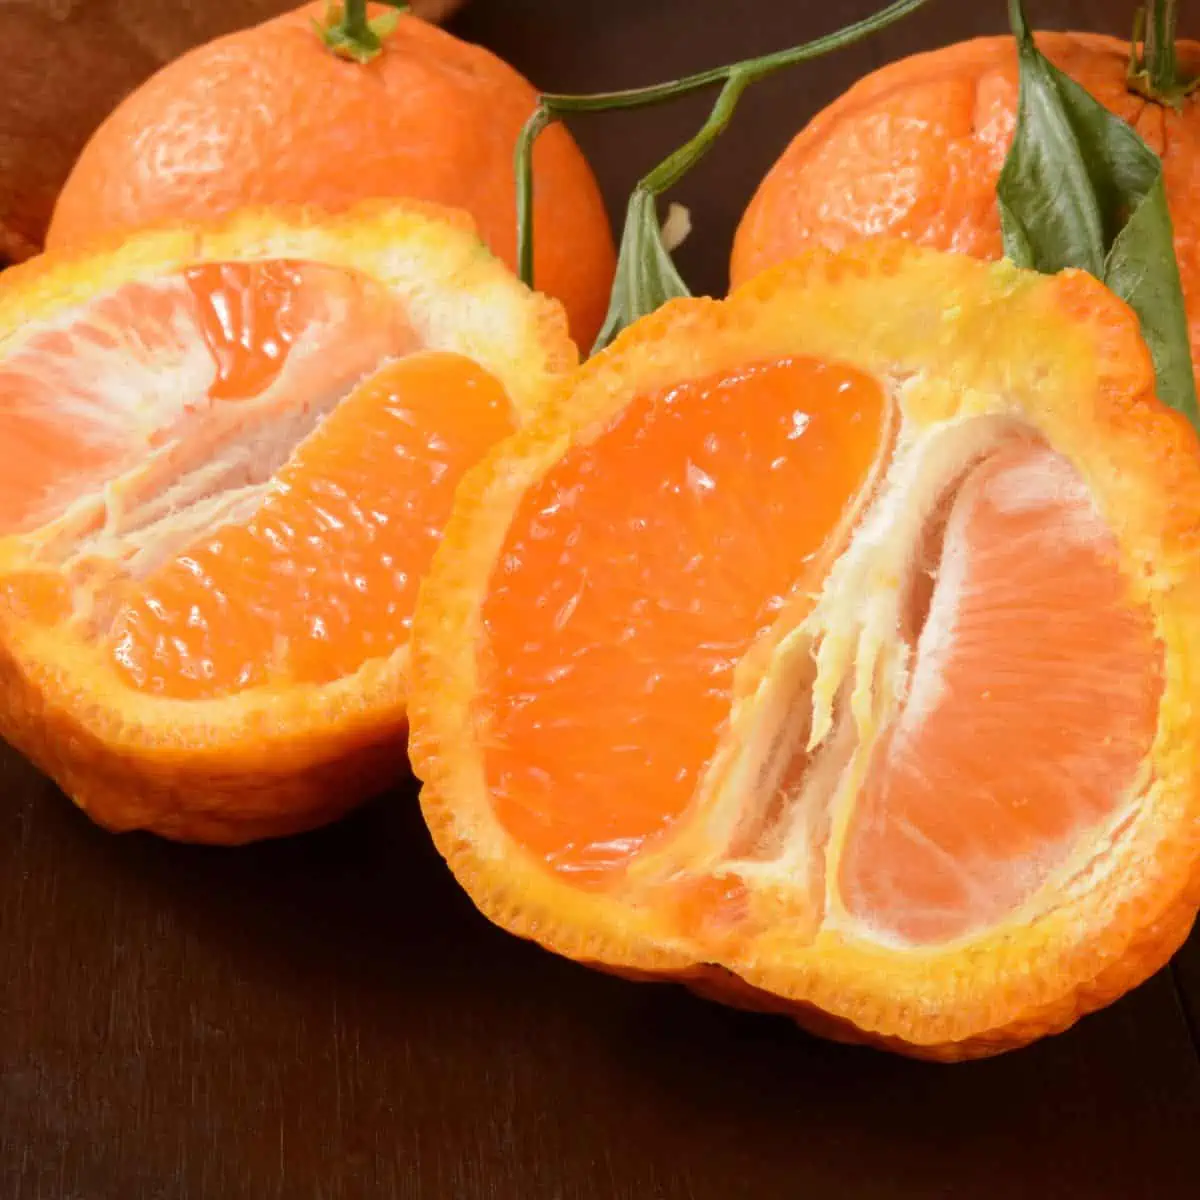 Sumo citrus fruit cut in half. 